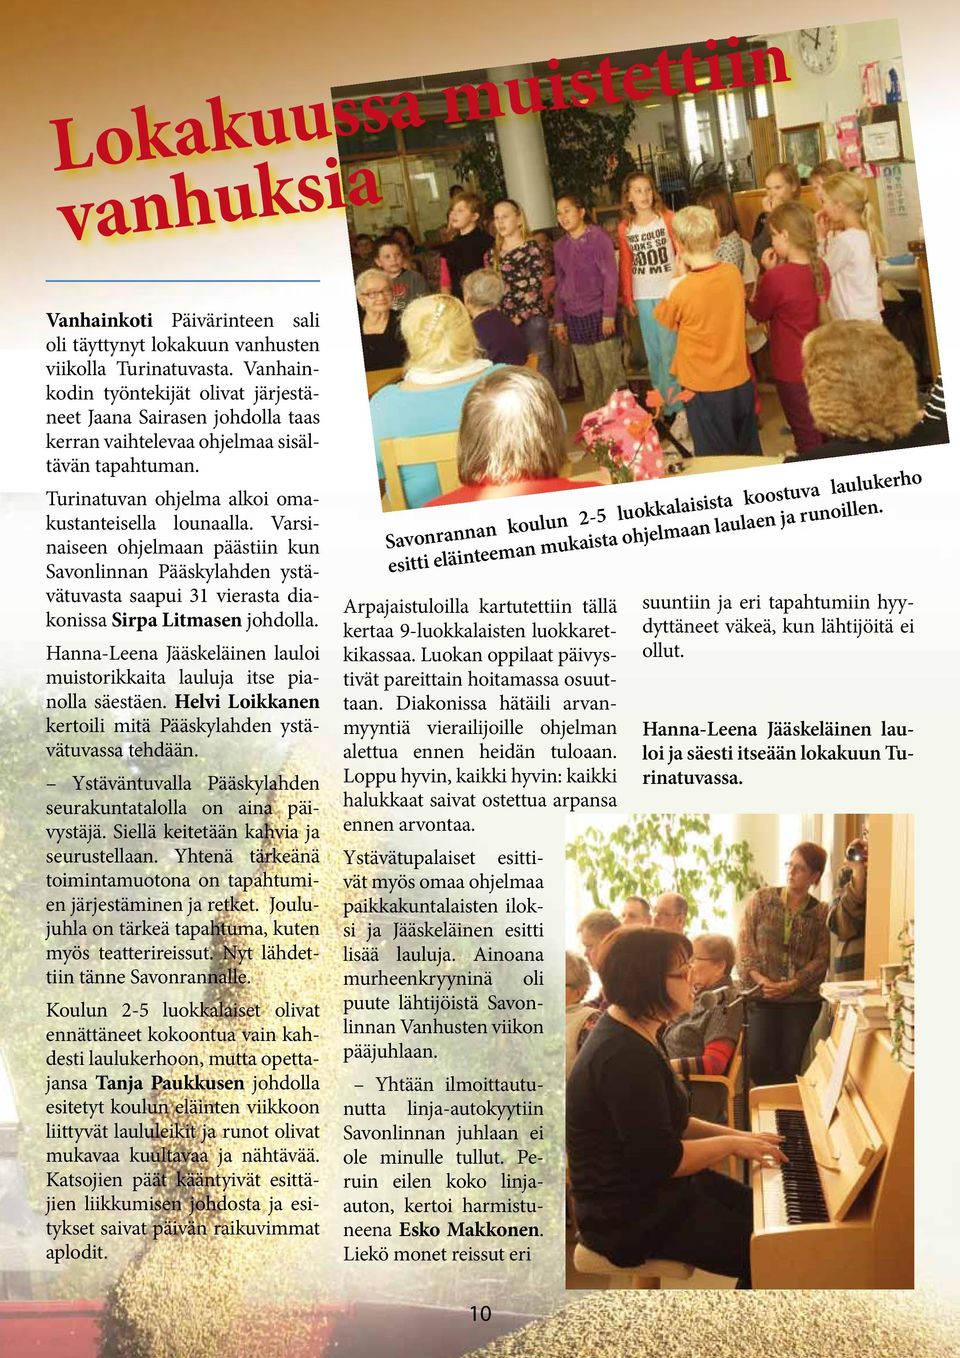 Varsinaiseen ohjelmaan päästiin kun Savonlinnan Pääskylahden ystävätuvasta saapui 31 vierasta diakonissa Sirpa Litmasen johdolla.